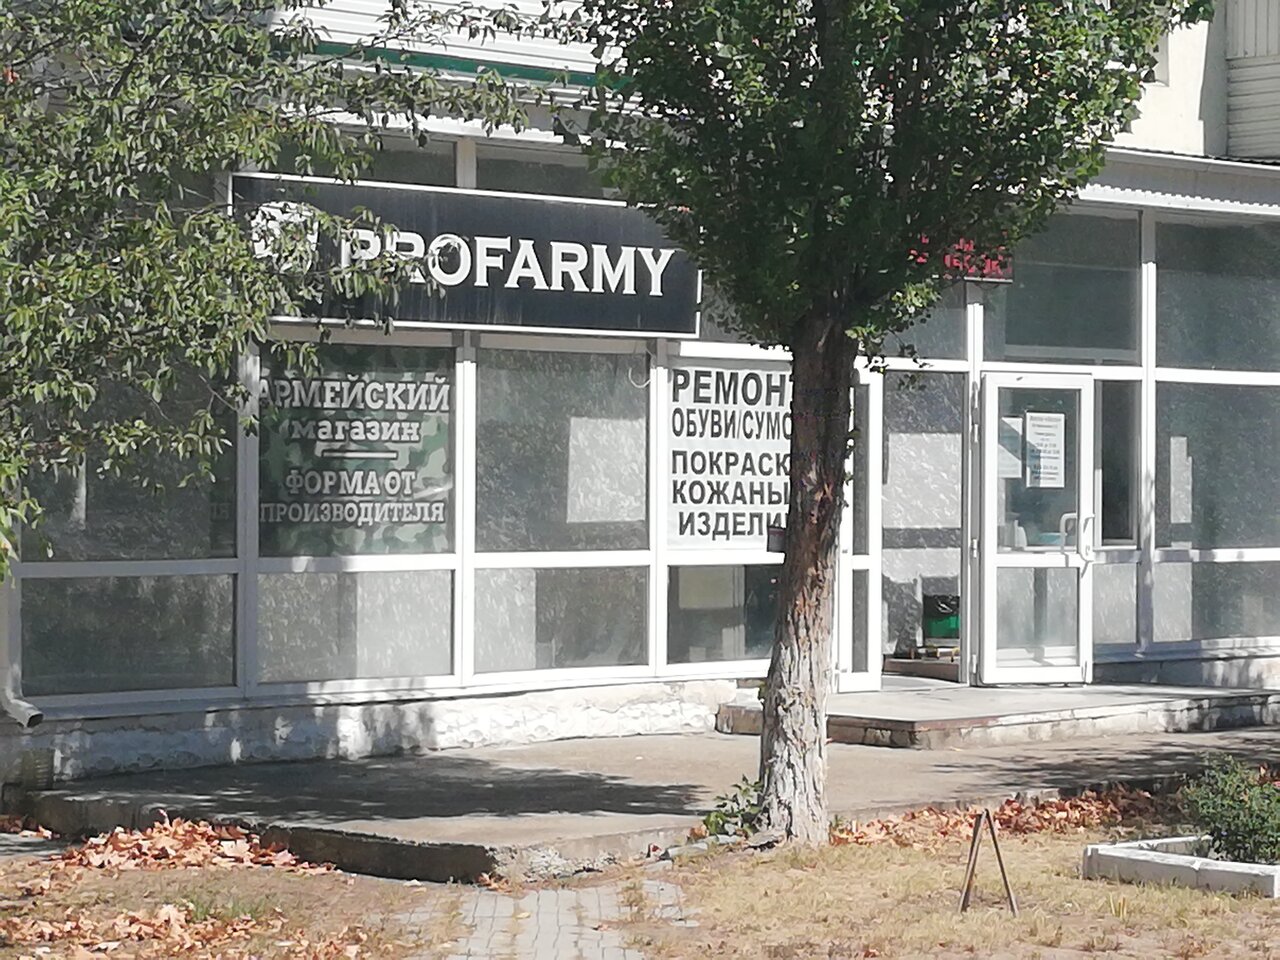 Вход в армейский магазин Profarmy на Видова в Новороссийске